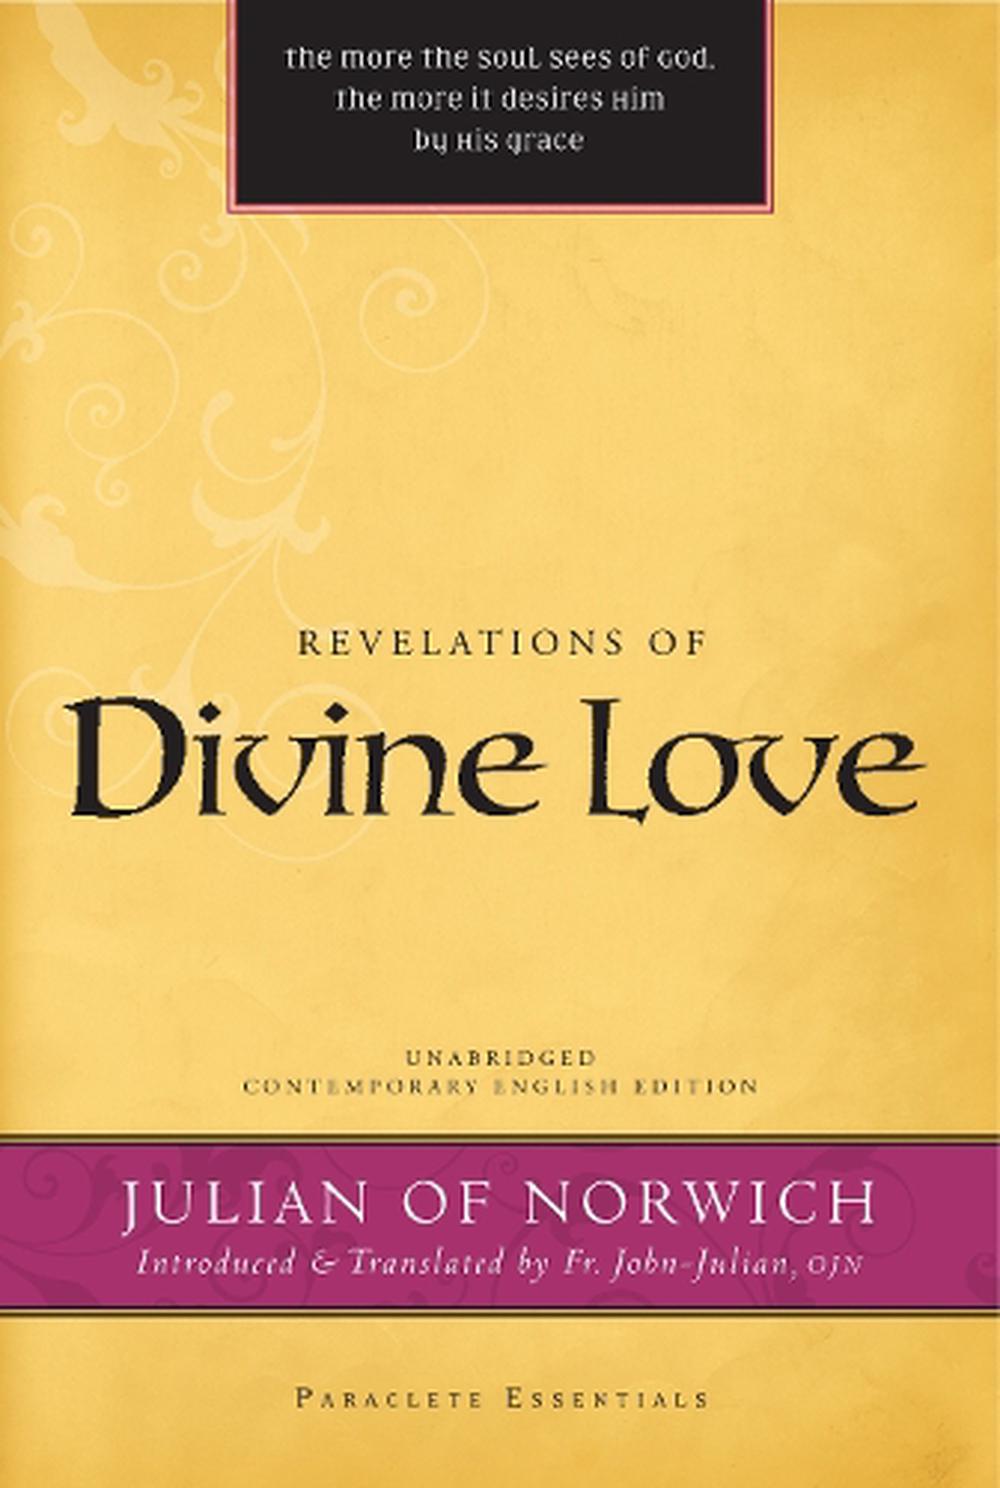 divine love julian norwich